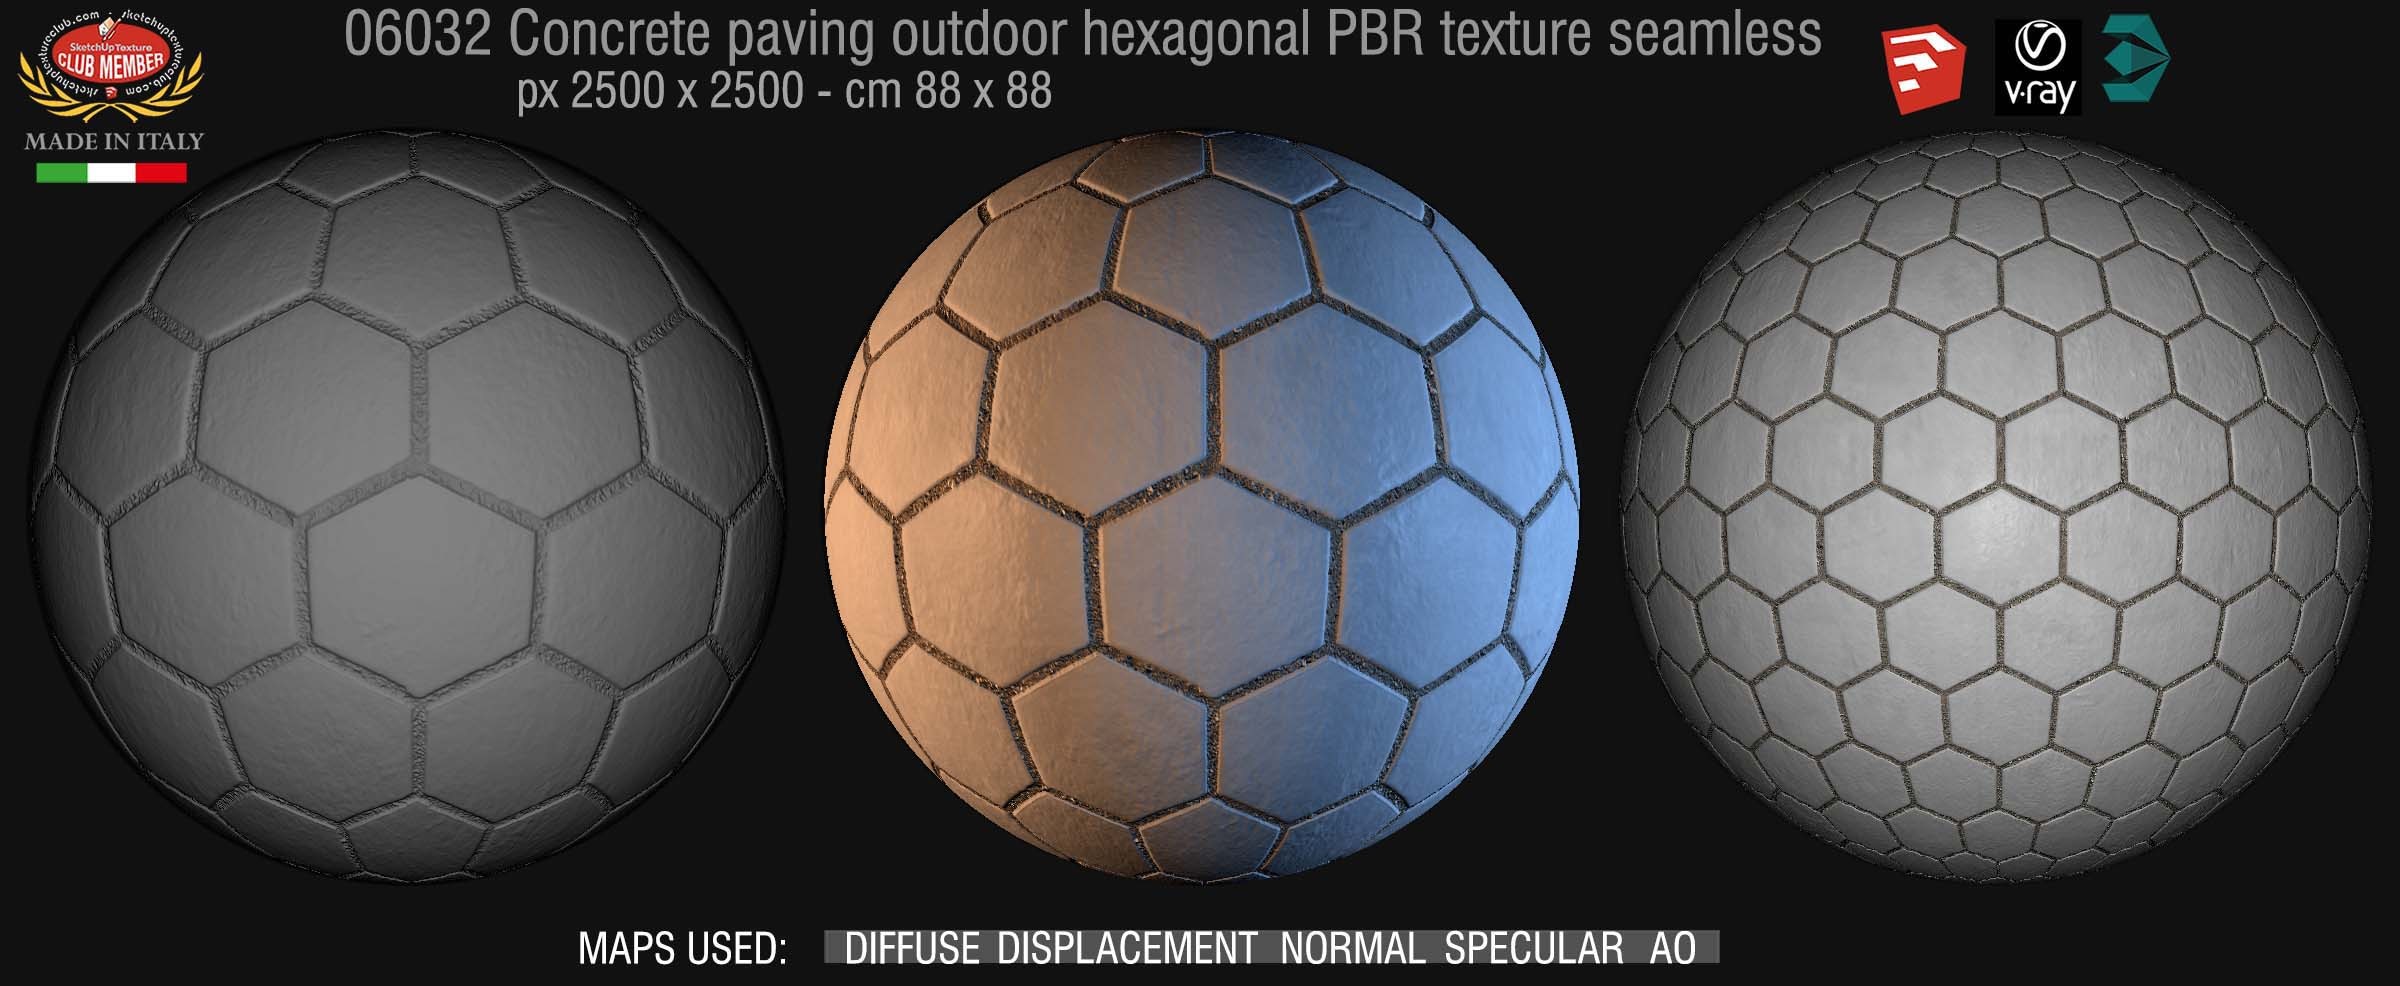 Concrete paving outdoor hexagonal texture seamless 06032